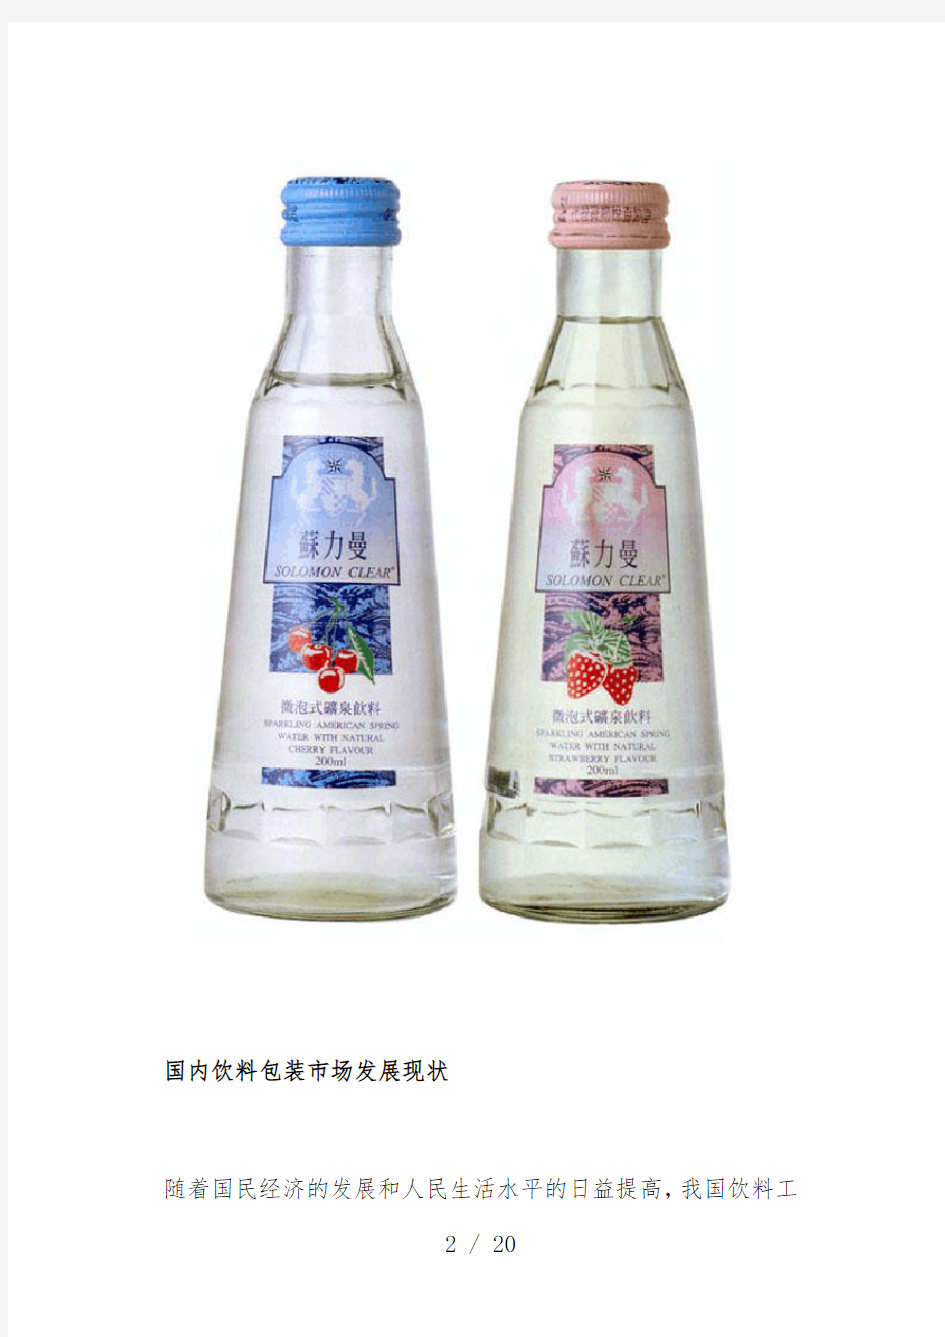 中国饮料包装市场发展现状及趋势